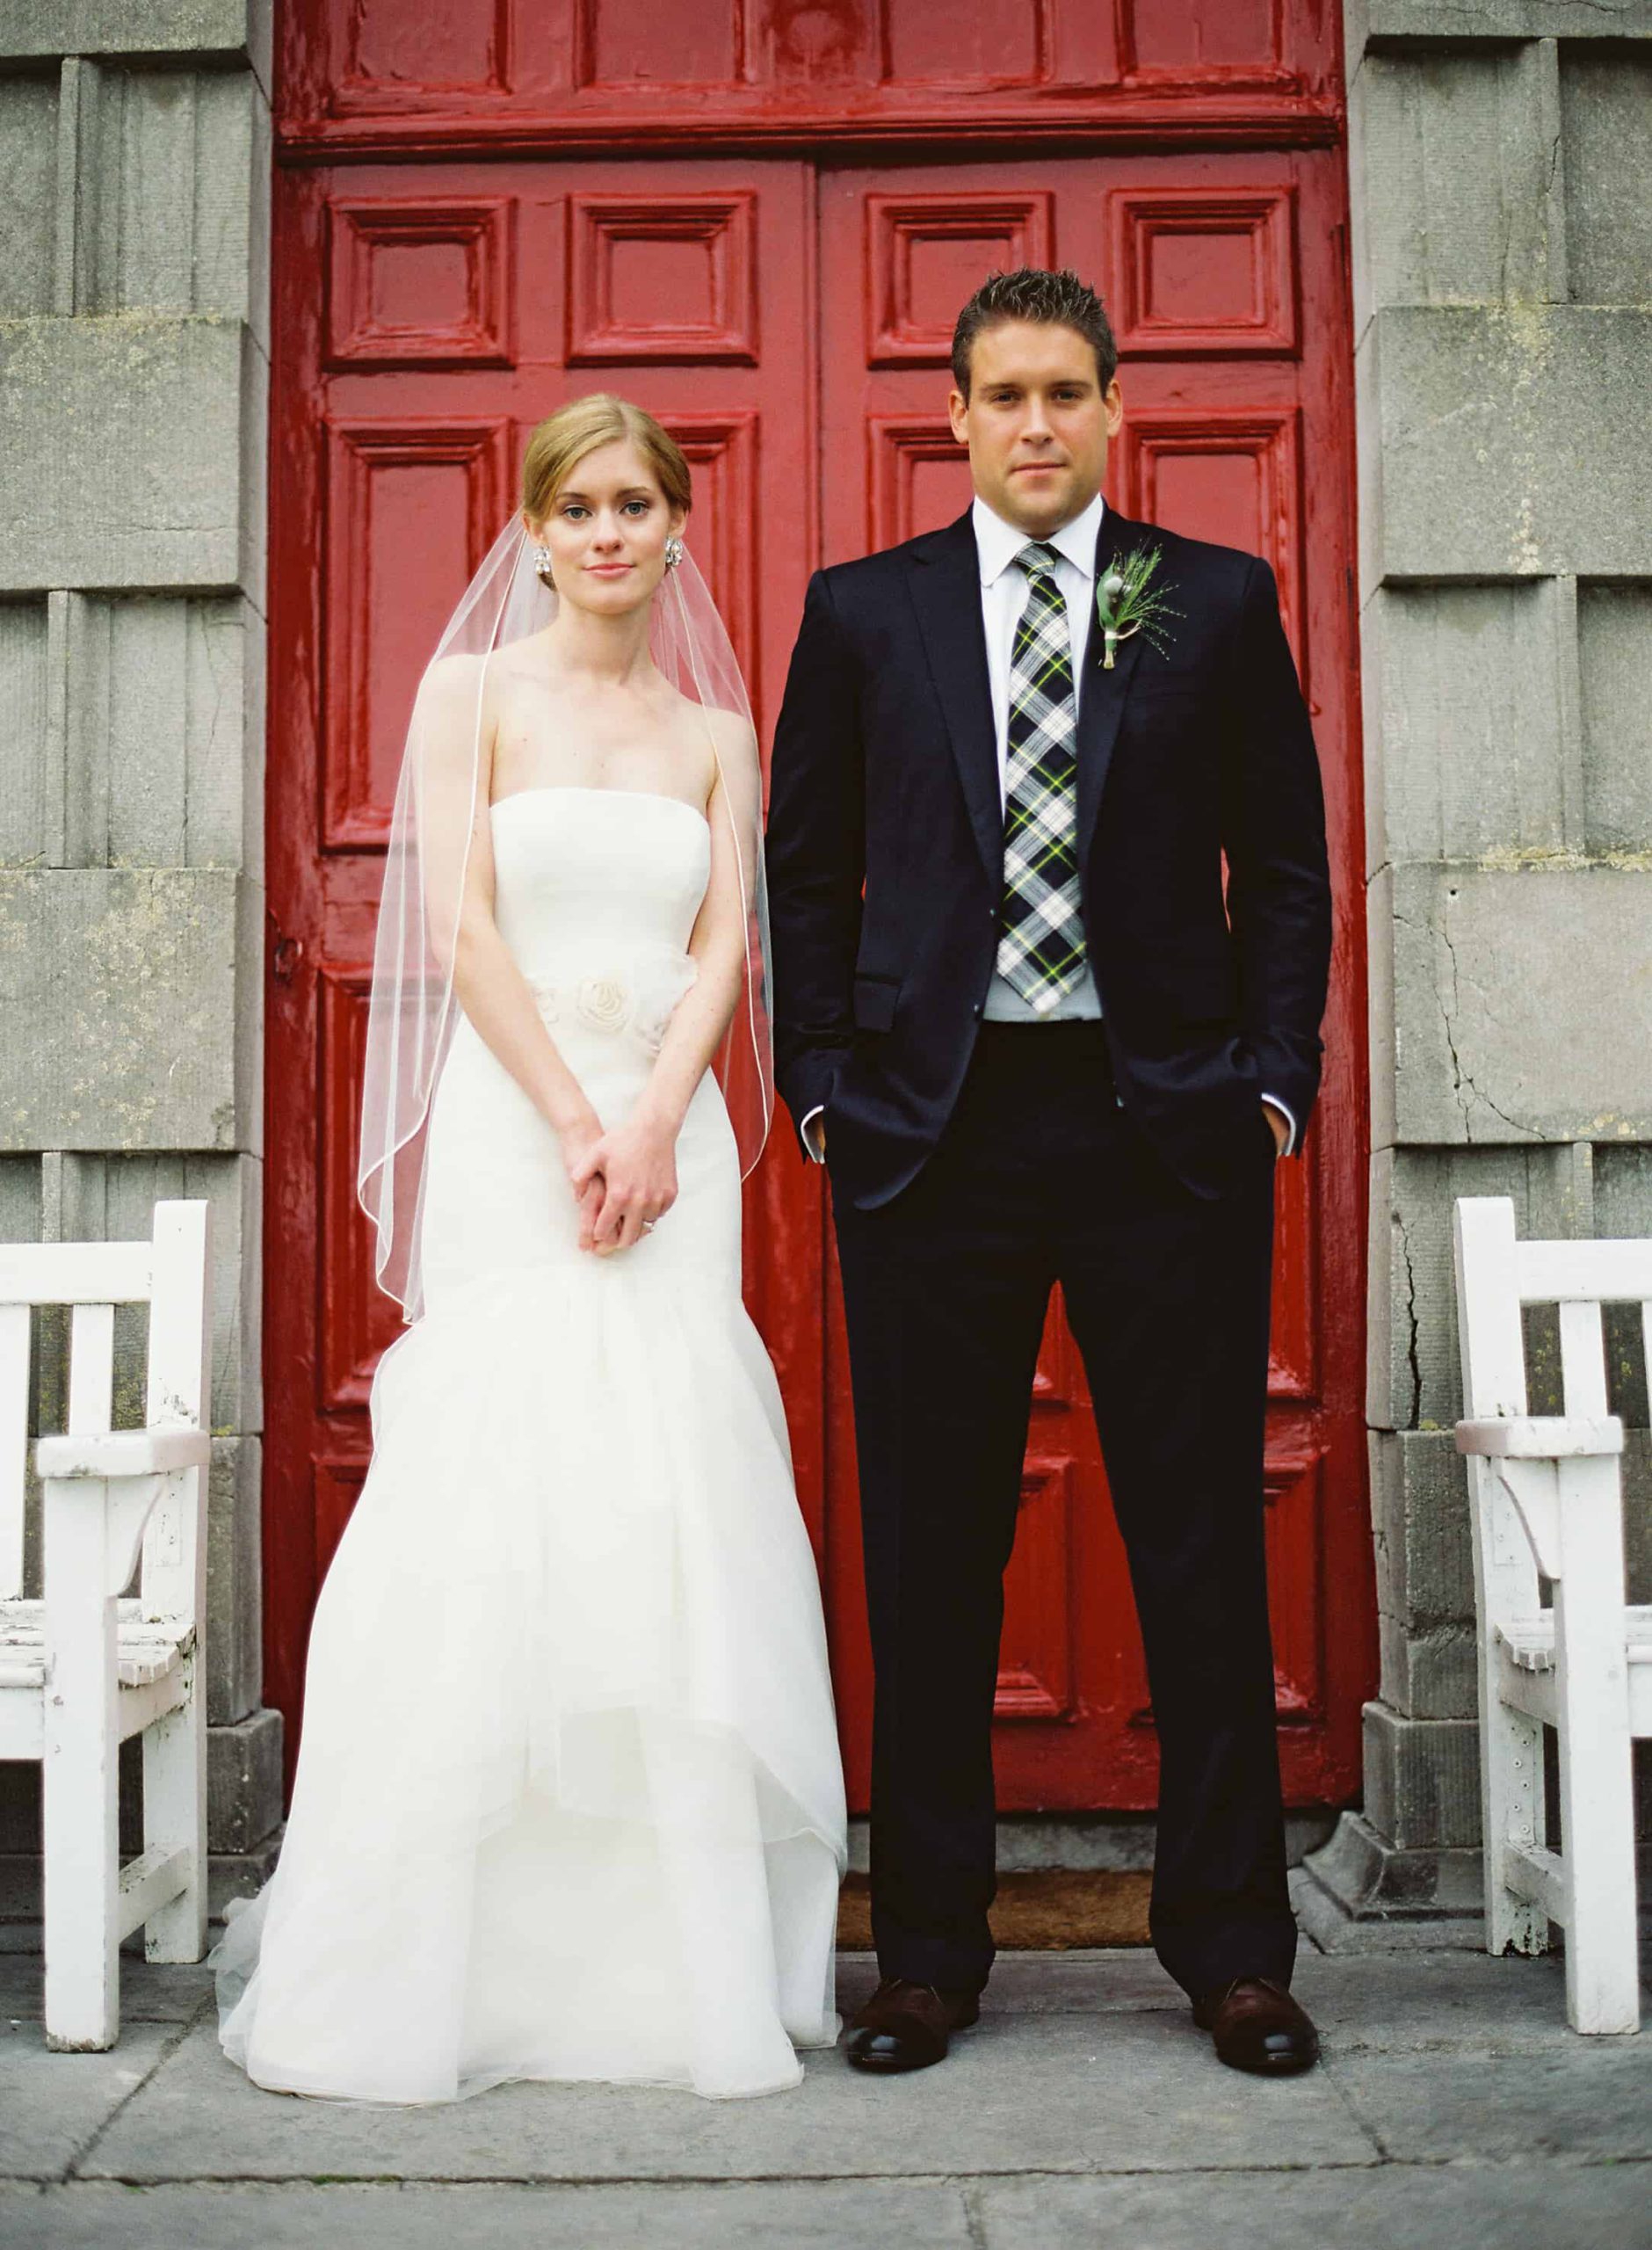 Bride and groom in front of a red door